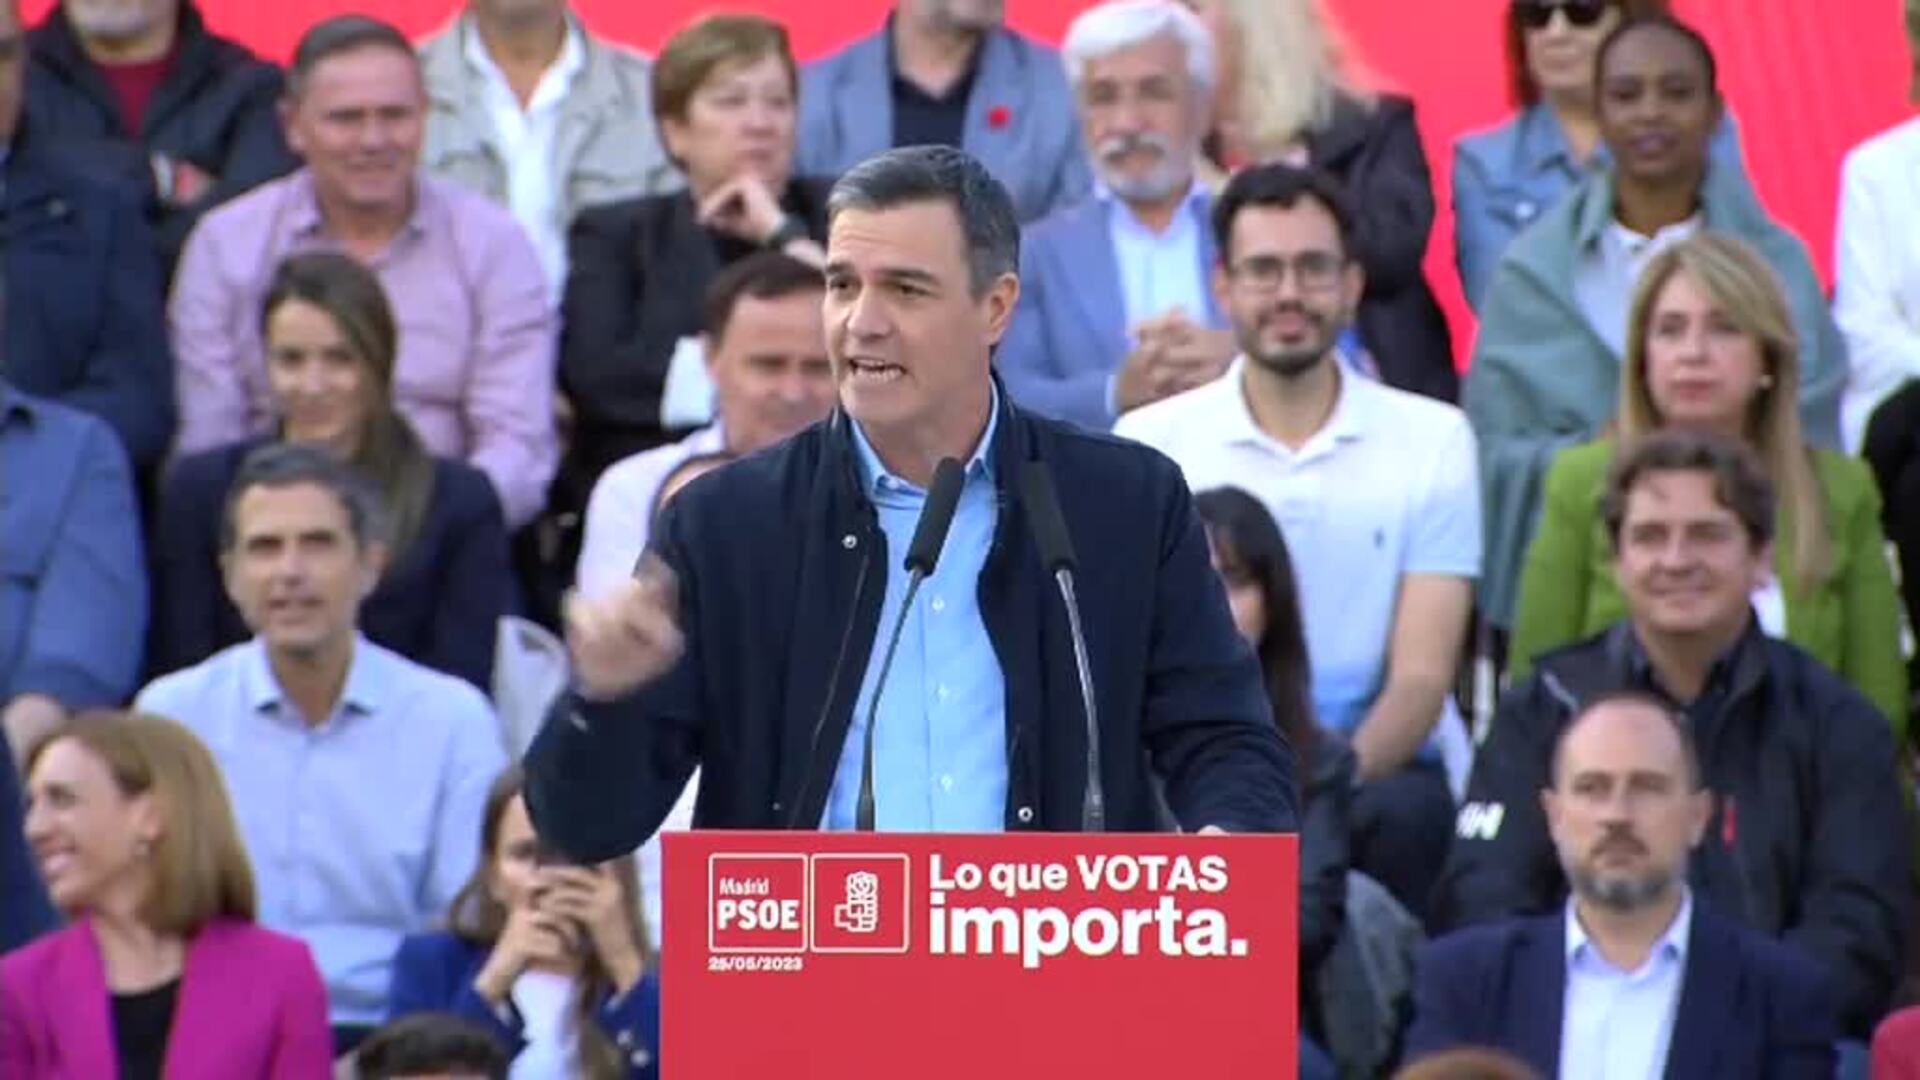 Sánchez: "La derecha no va a parar en insultar, descalificar y embarrar la campaña"